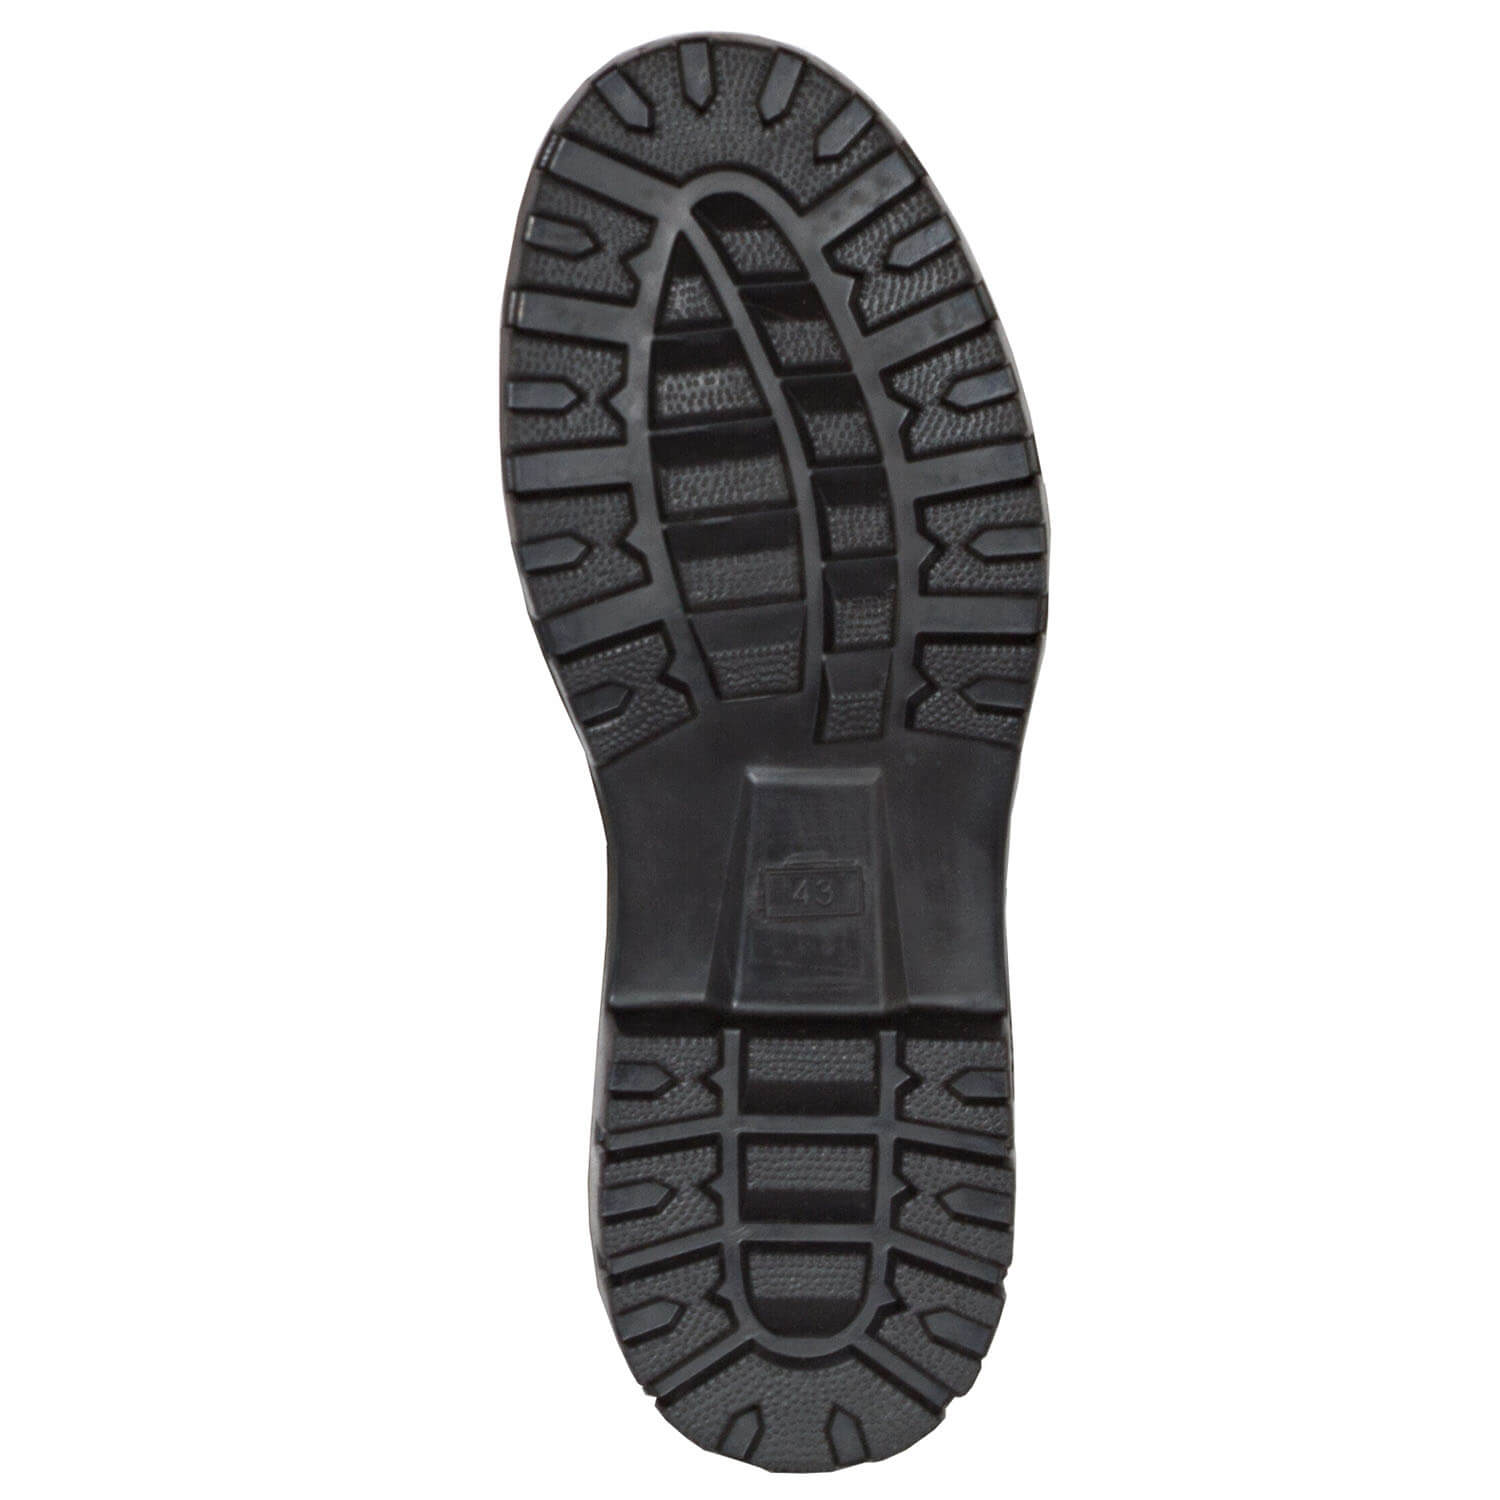 Tracker Rubber Boots Comfort Neopren (brown)